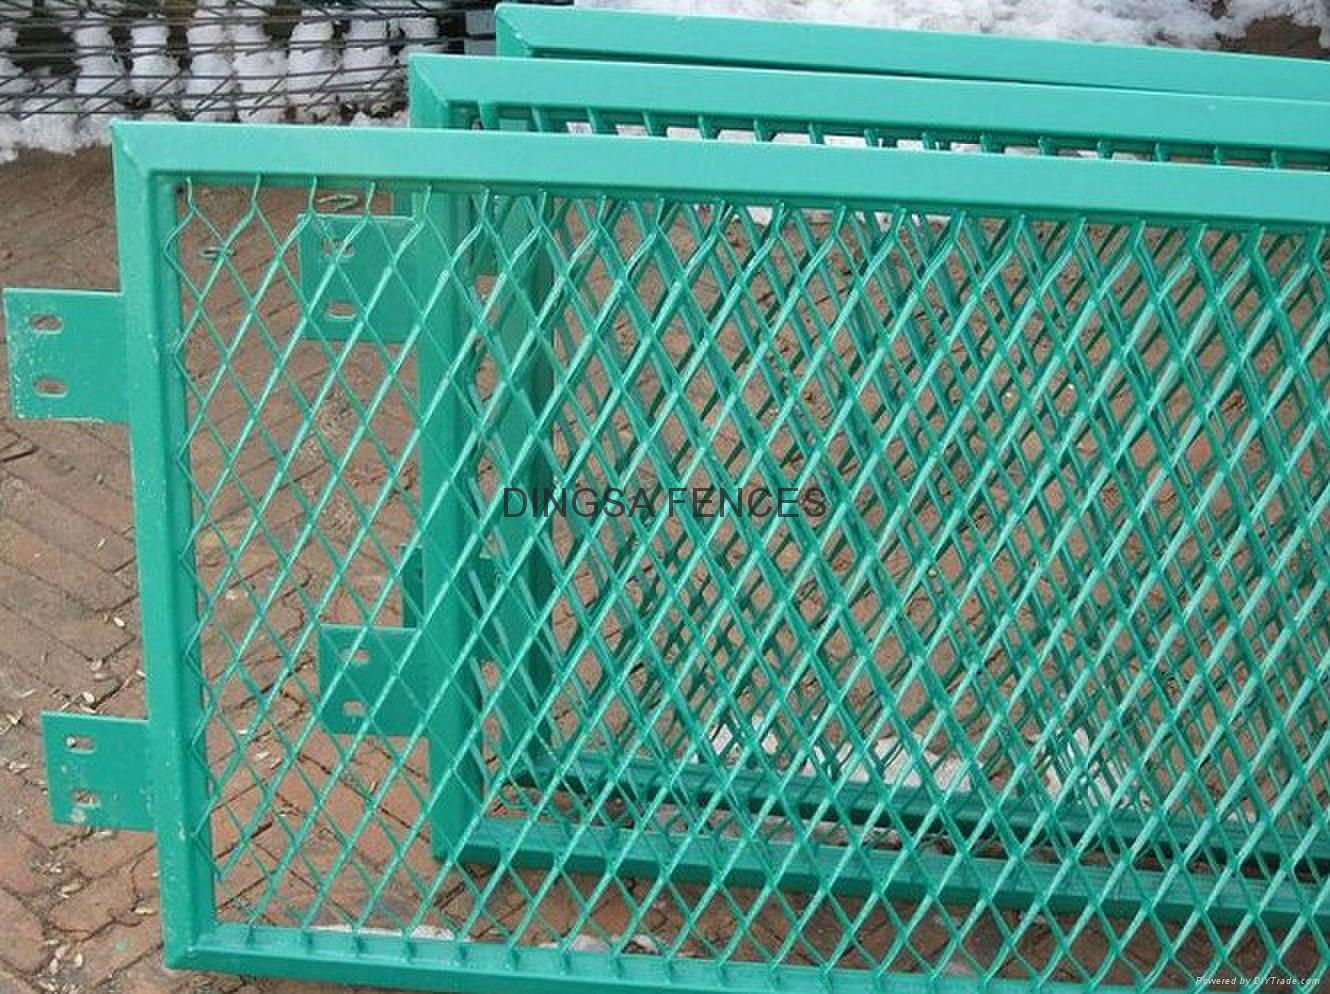 DINGSA Steel Mesh Fence 5